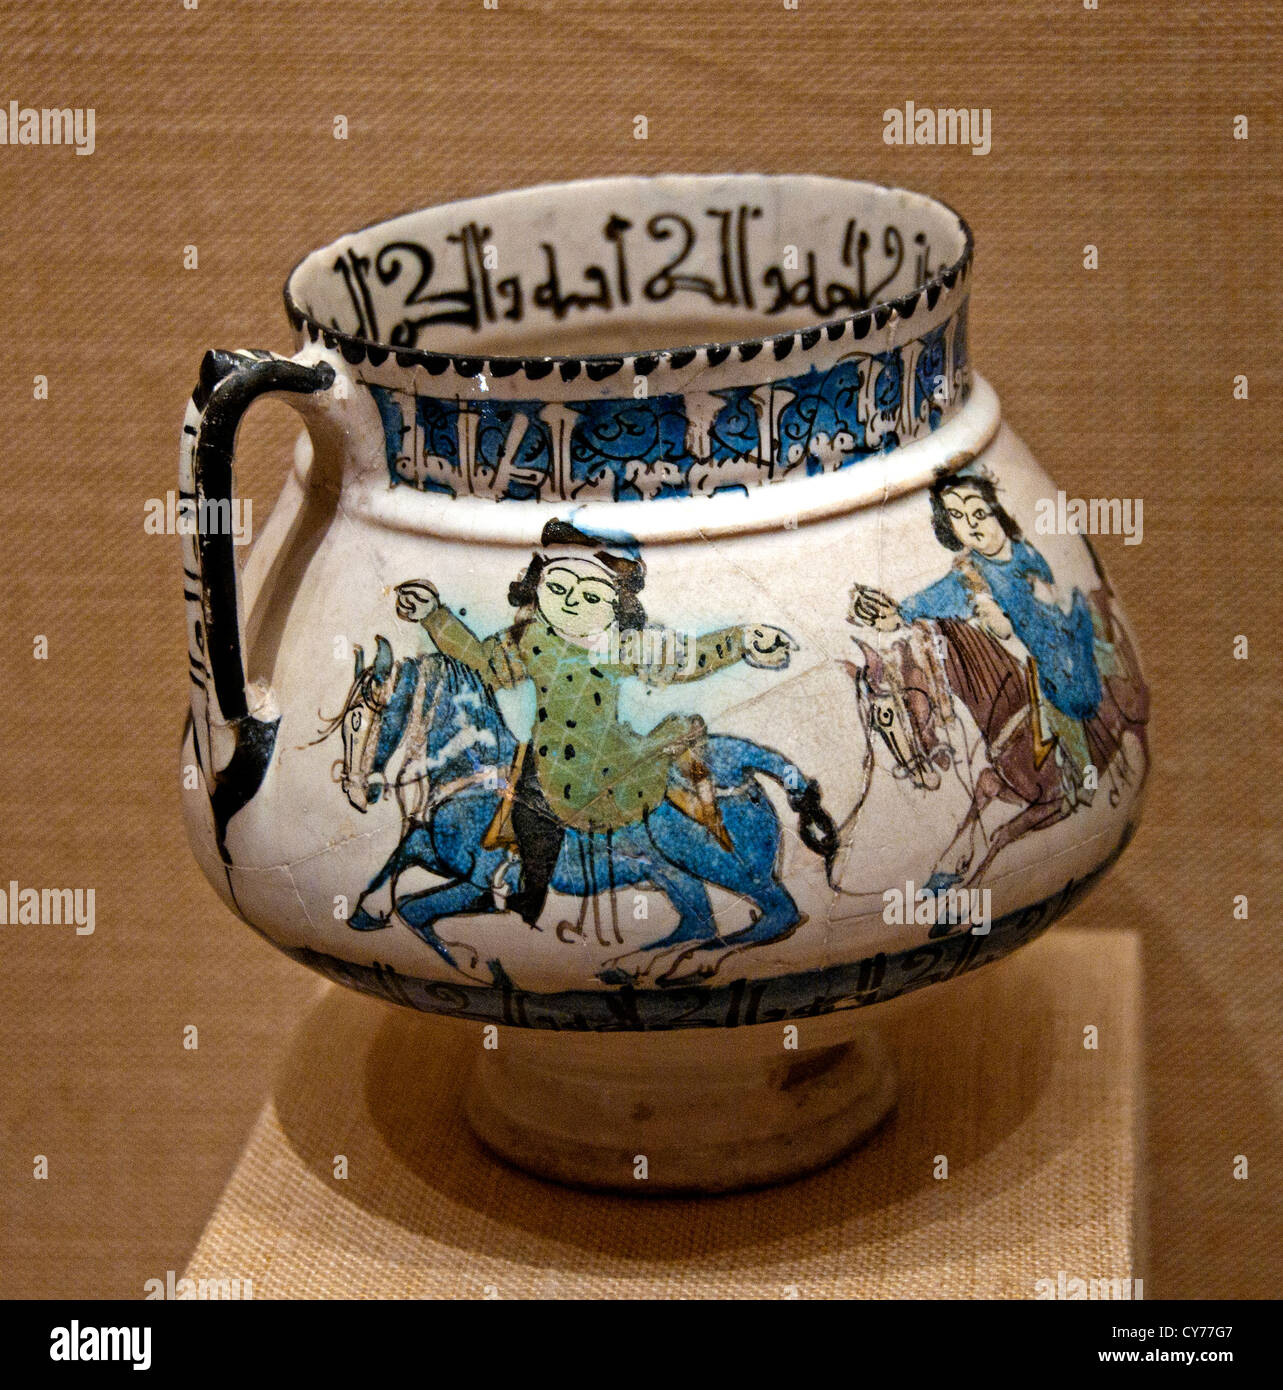 Ewer mit Reitern glasierte 12. – 13. Jahrhundert Iran Stonepaste geformt Monochrom Keramik Iran Stockfoto